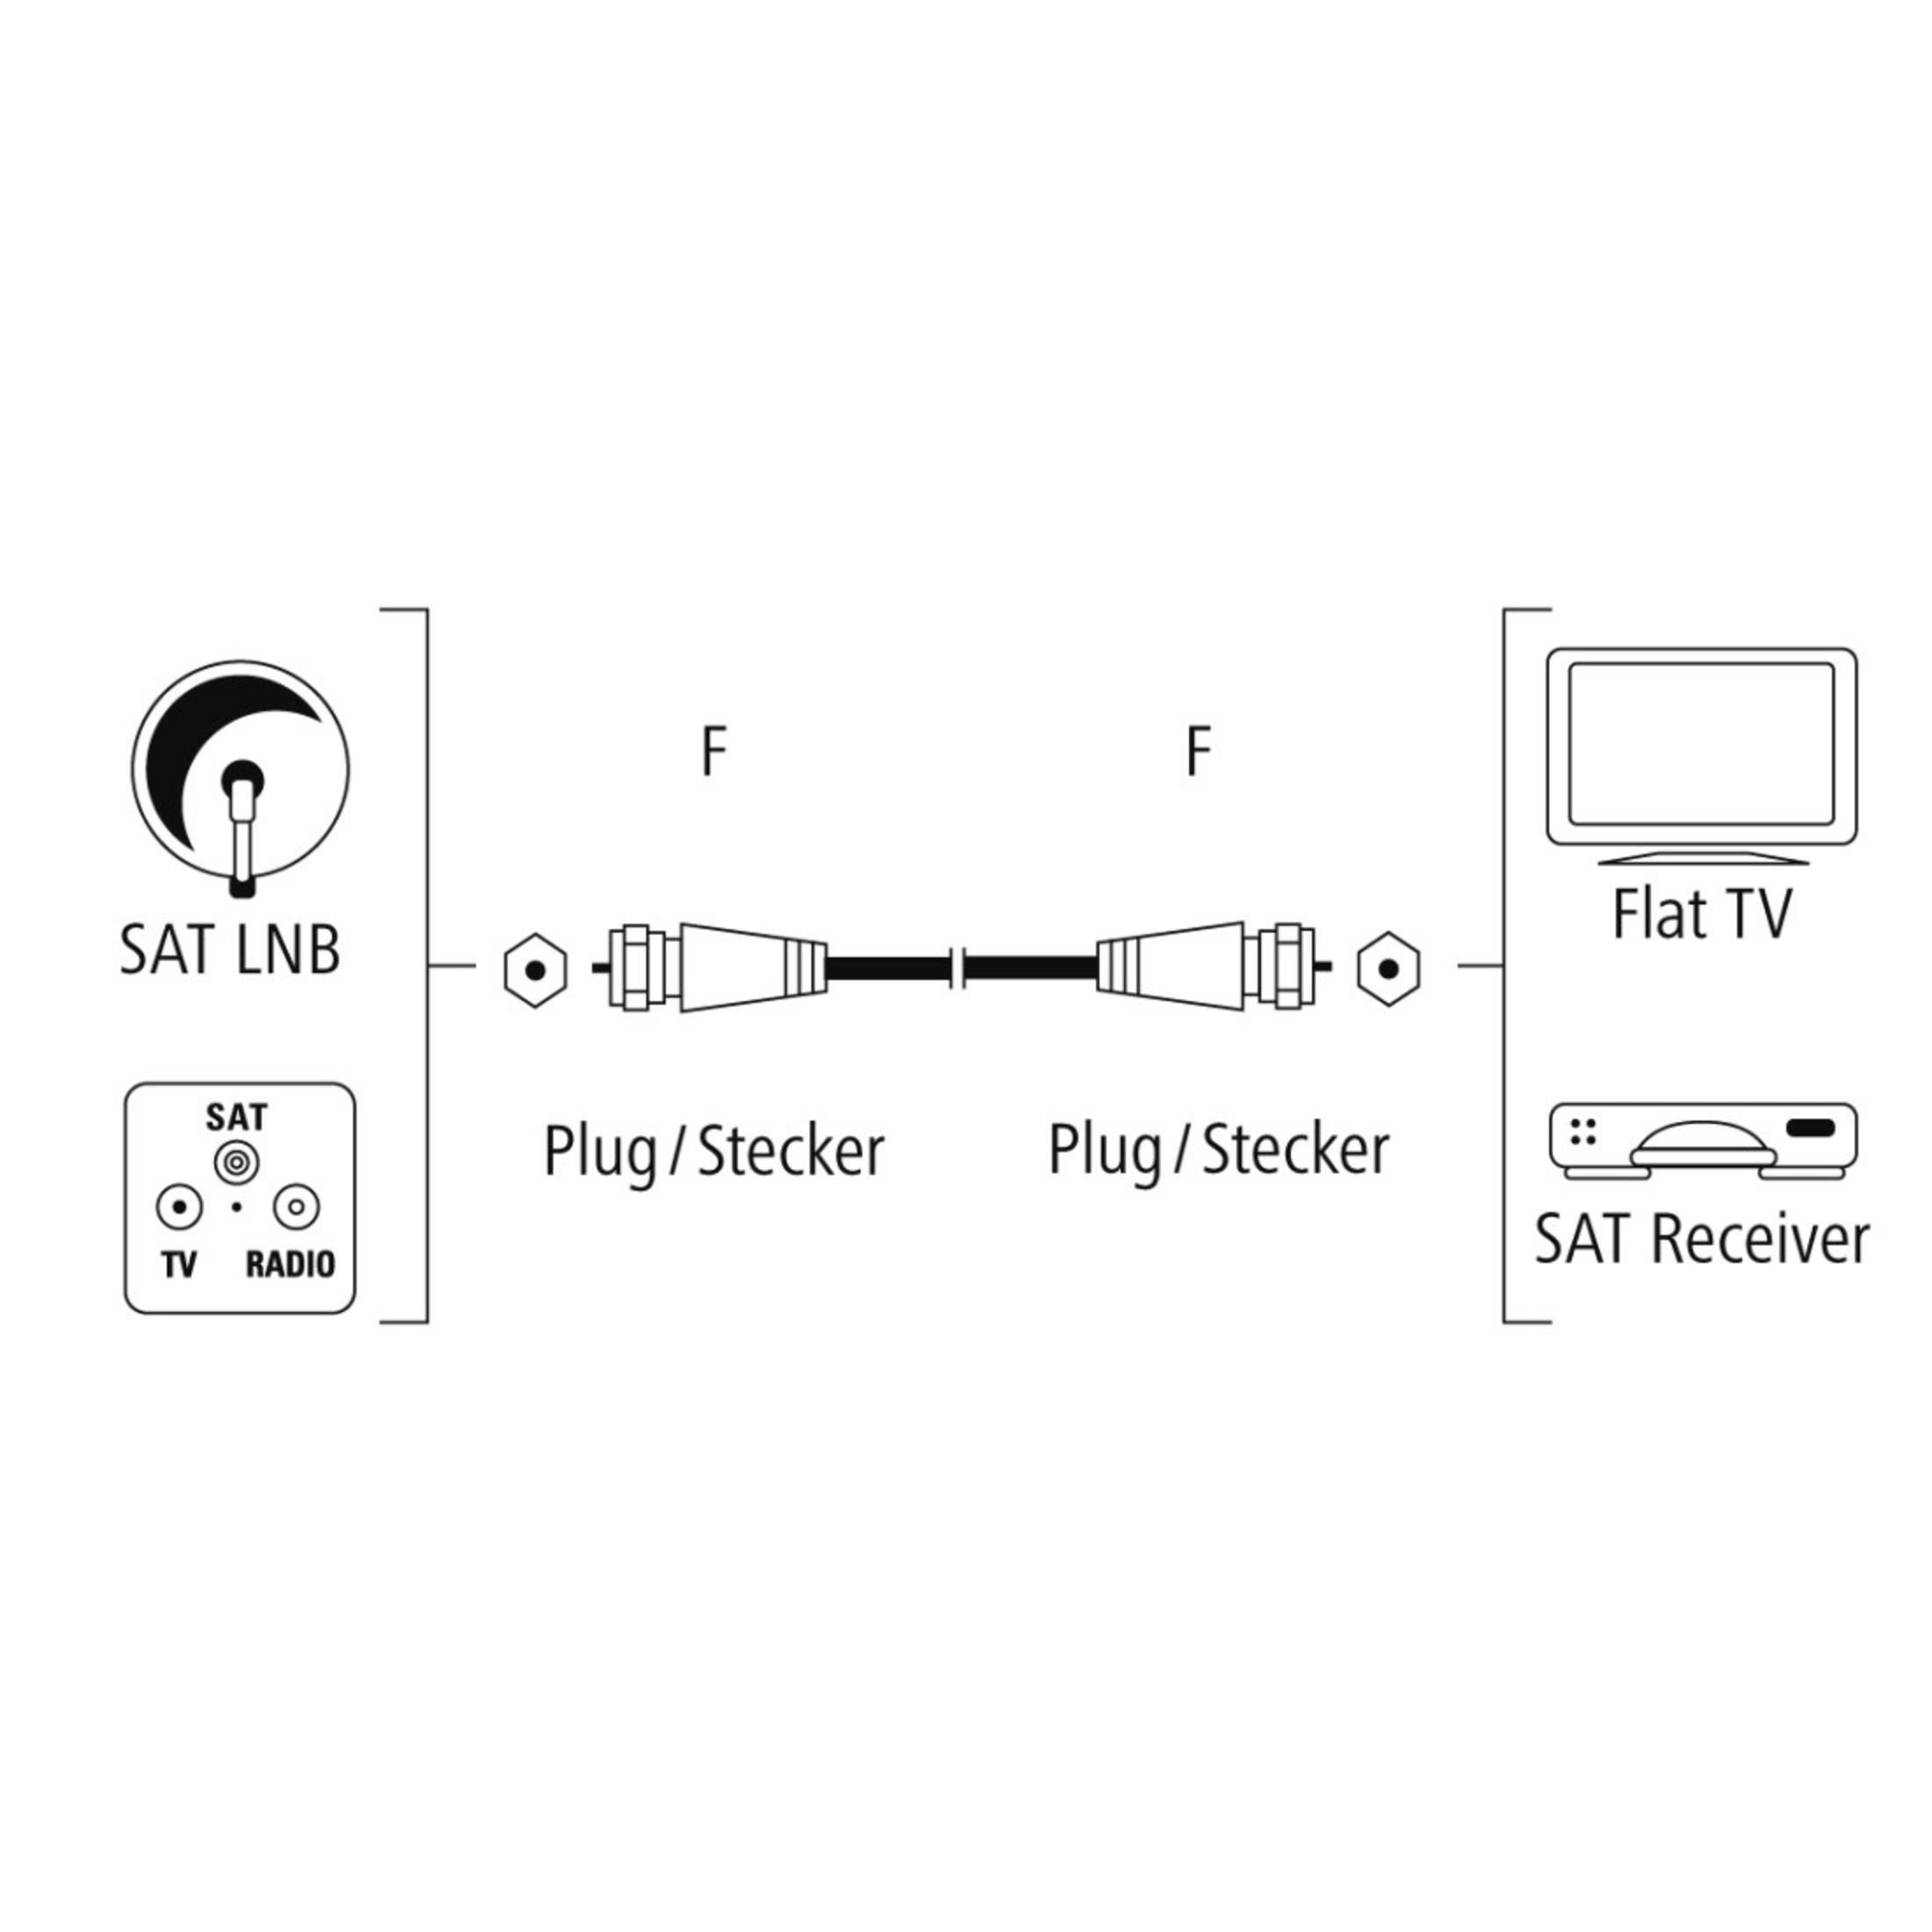 F-Stecker - HAMA F-Stecker SAT-Anschlusskabel